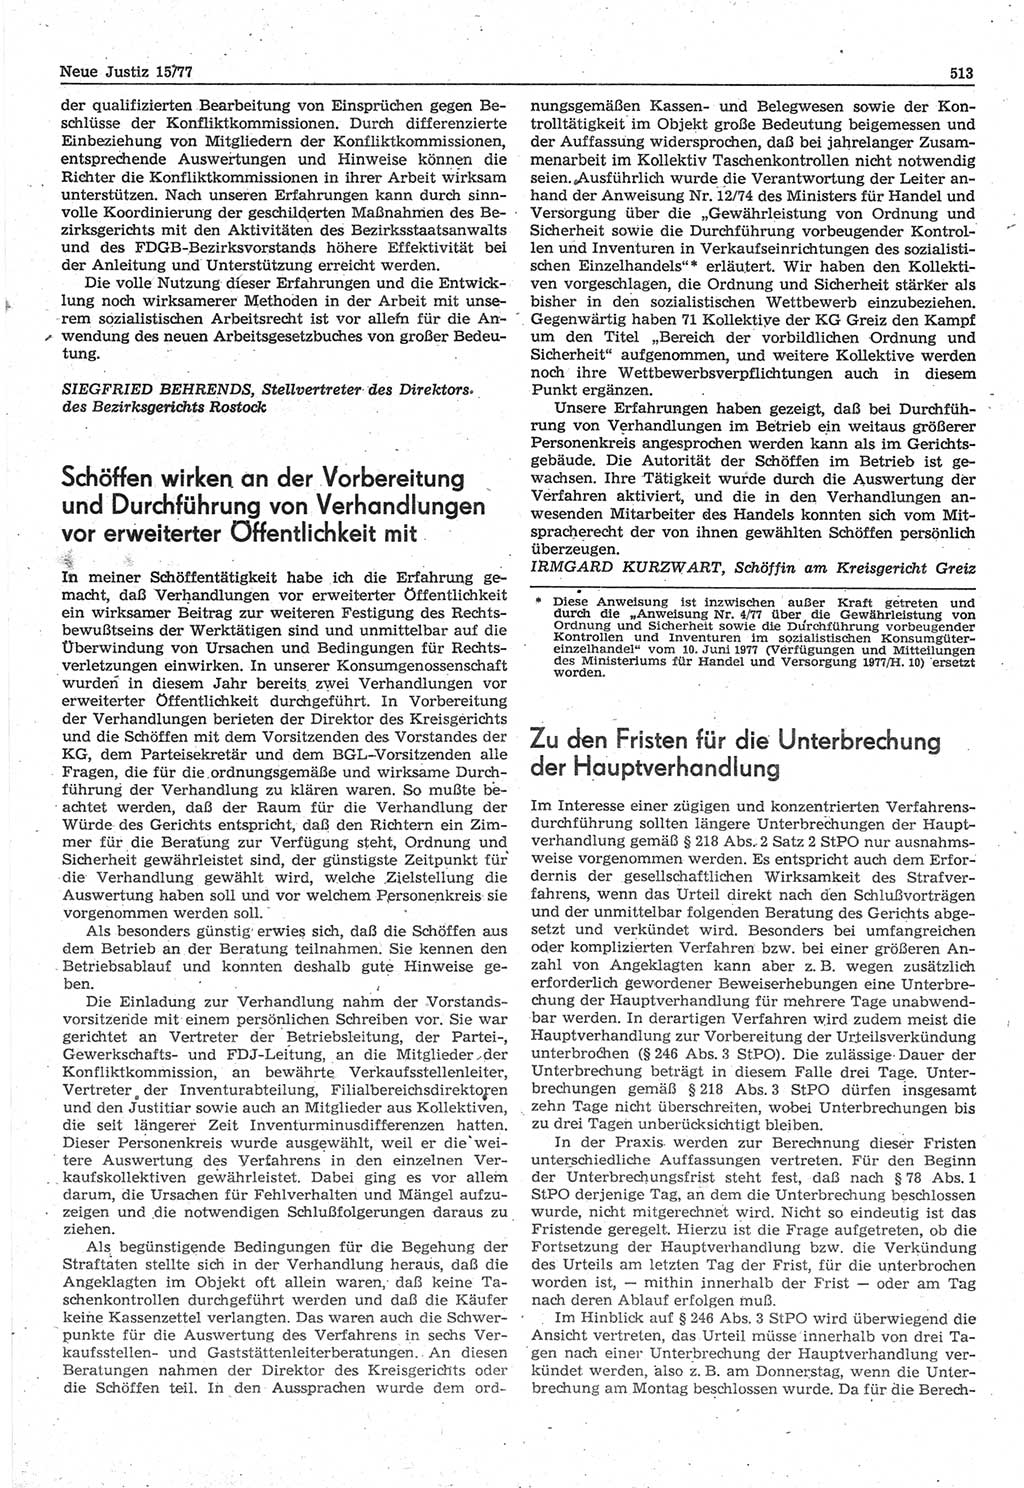 Neue Justiz (NJ), Zeitschrift für Recht und Rechtswissenschaft-Zeitschrift, sozialistisches Recht und Gesetzlichkeit, 31. Jahrgang 1977, Seite 513 (NJ DDR 1977, S. 513)